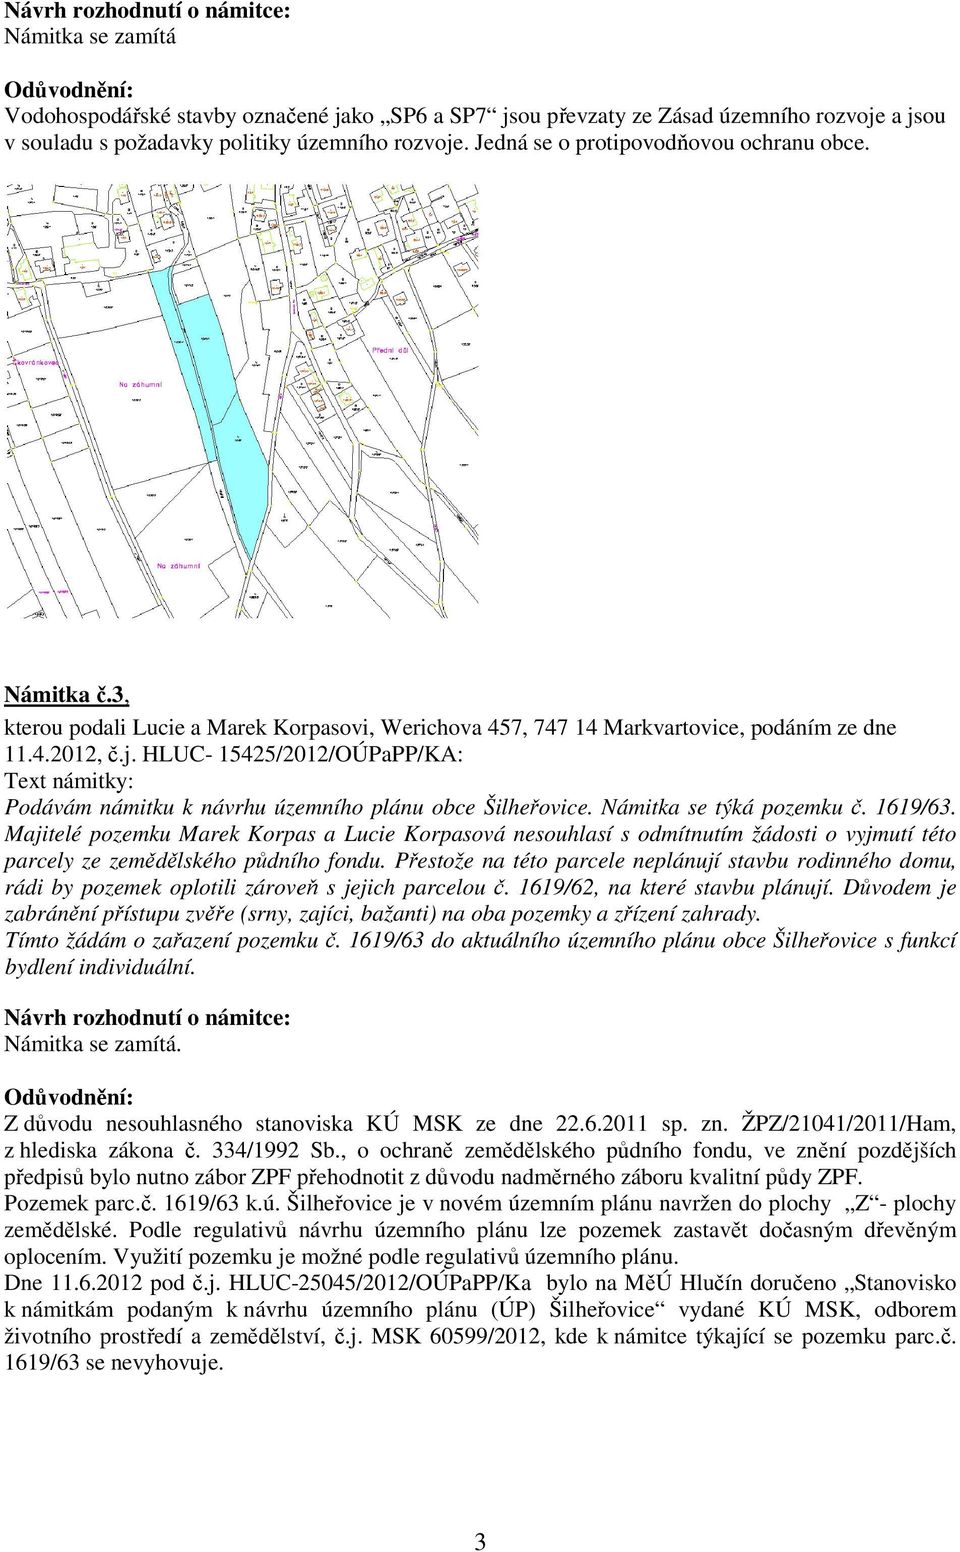 HLUC- 15425/2012/OÚPaPP/KA: Podávám námitku k návrhu územního plánu obce Šilheřovice. Námitka se týká pozemku č. 1619/63.